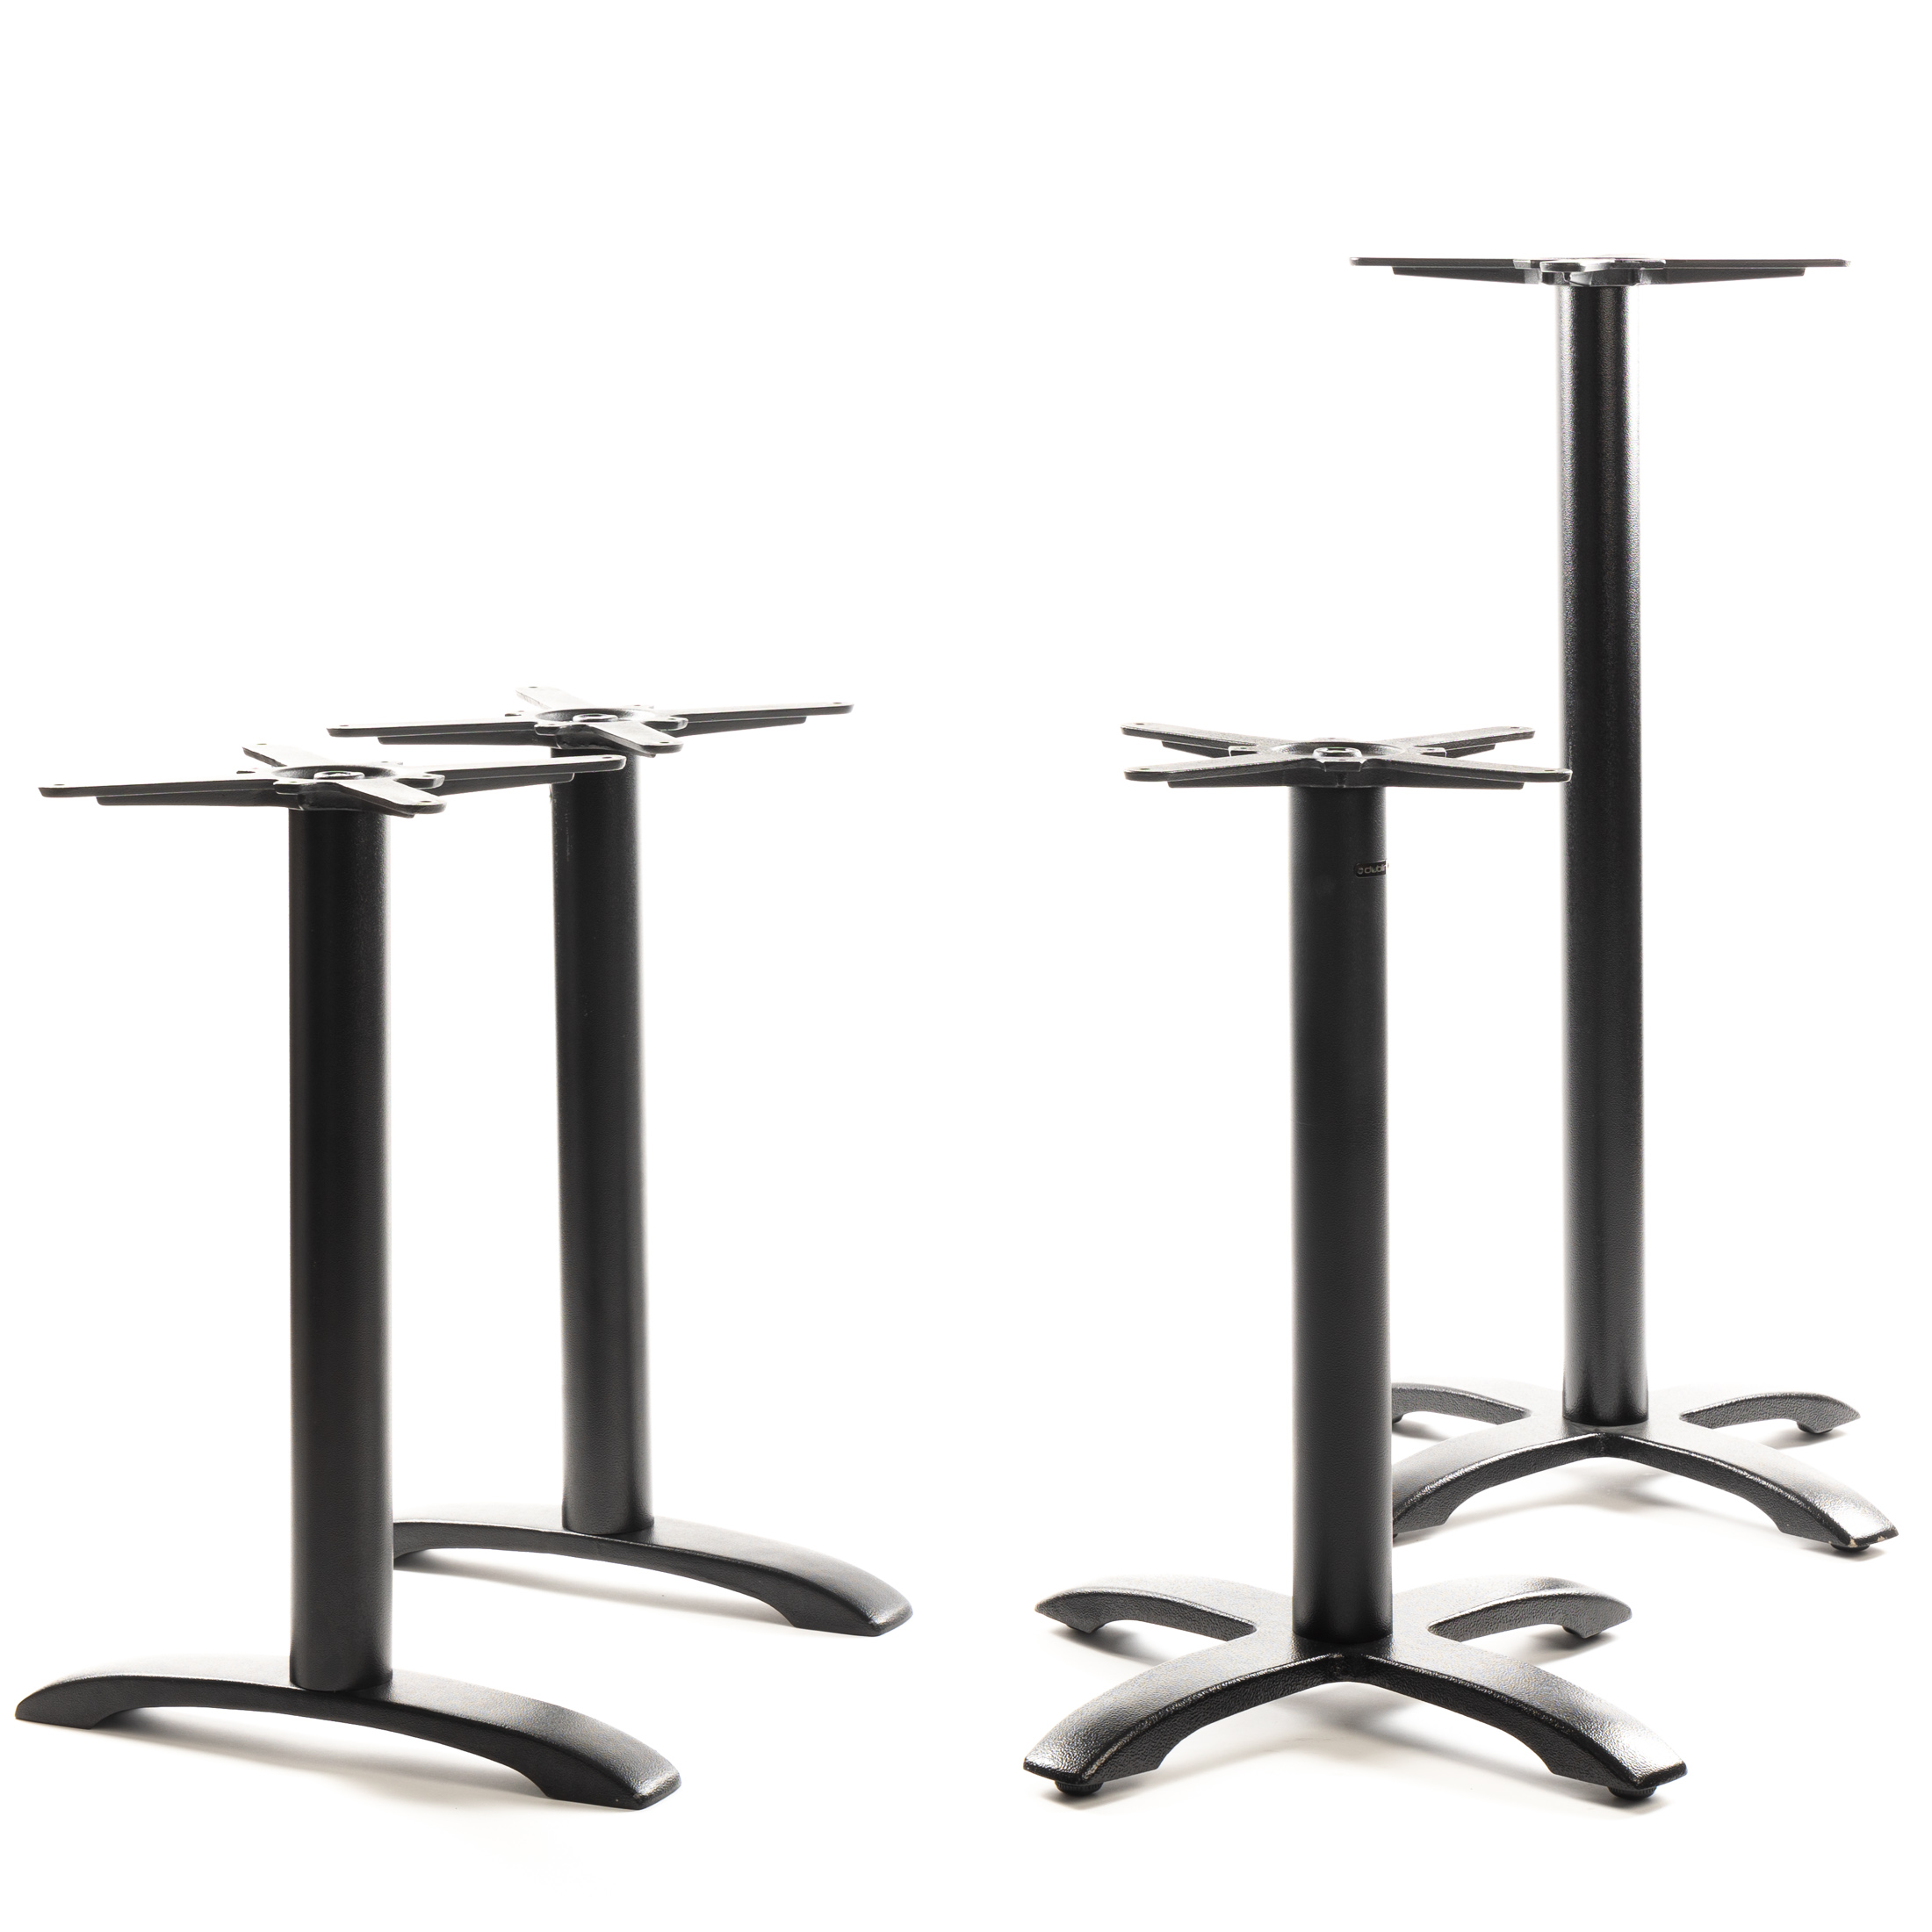 Tischgestell PJ7602 (Tischbein) aus Gusseisen, pulverbeschichtet schwarz, 4-zehiger Standfuß